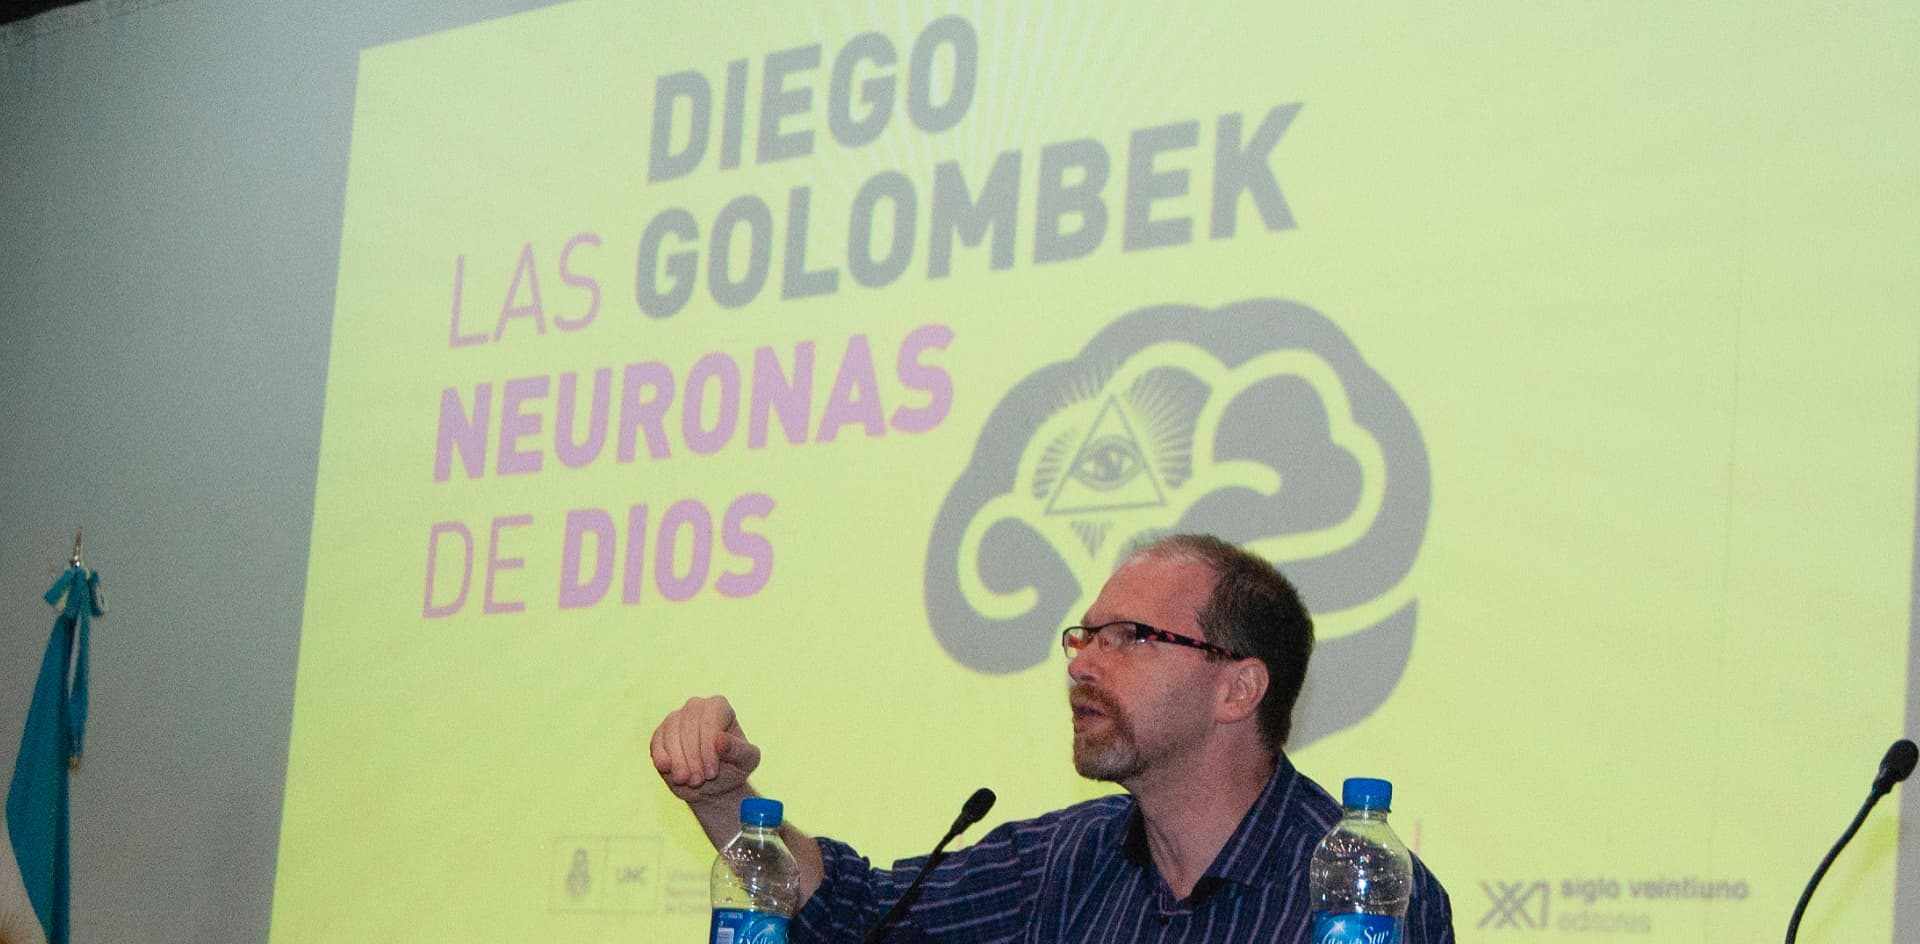 Golombek: “La creencia en lo sobrenatural se basa en los circuitos del cerebro que nos hacen irracionales”